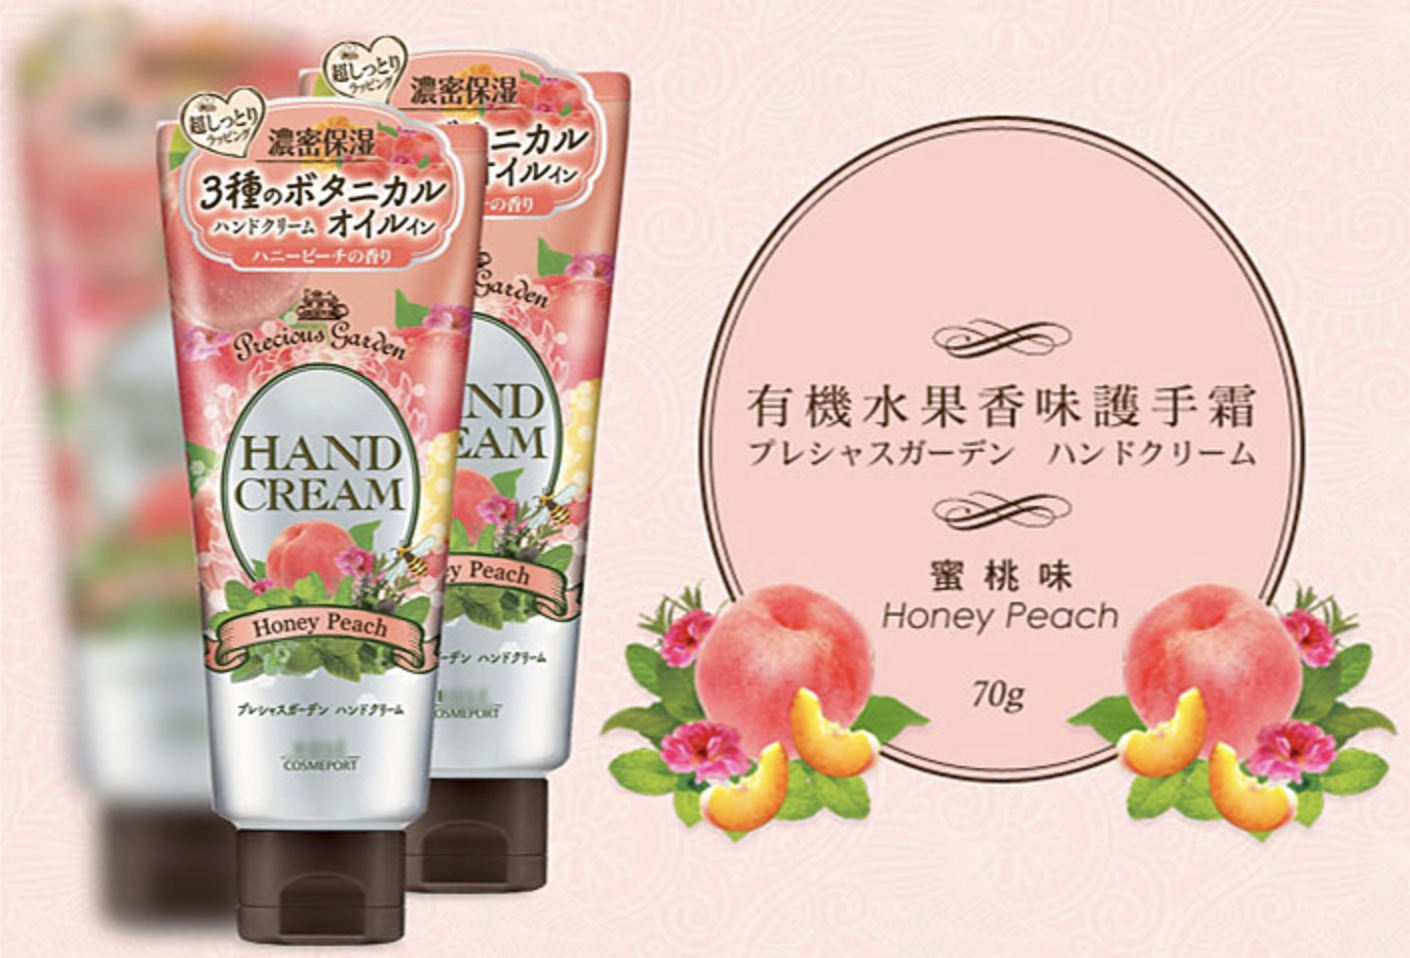 
                  
                    KOSE Precious Garden Hand Cream - Honey Peach 70g
                  
                